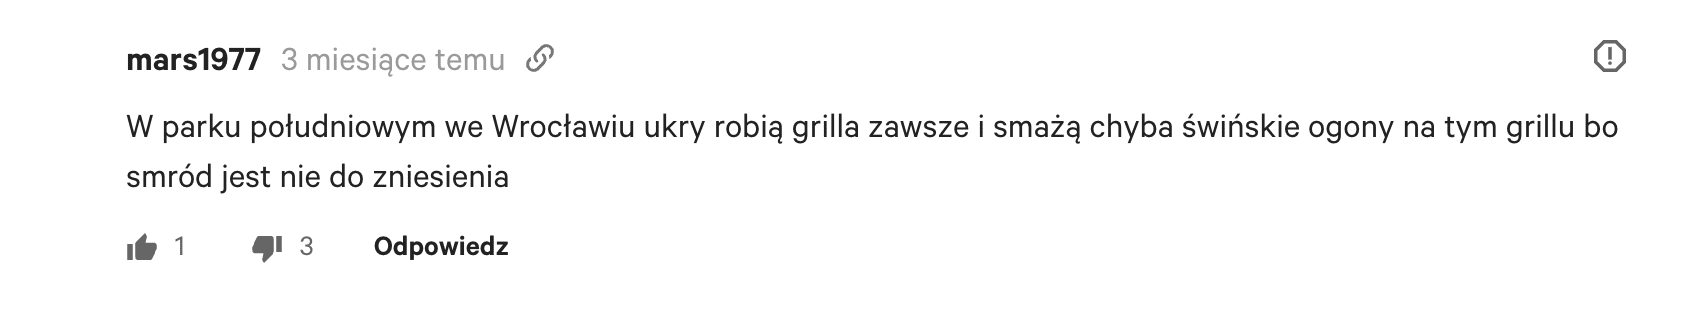 Antyukraiński komentarz w serwisie Gazeta.pl